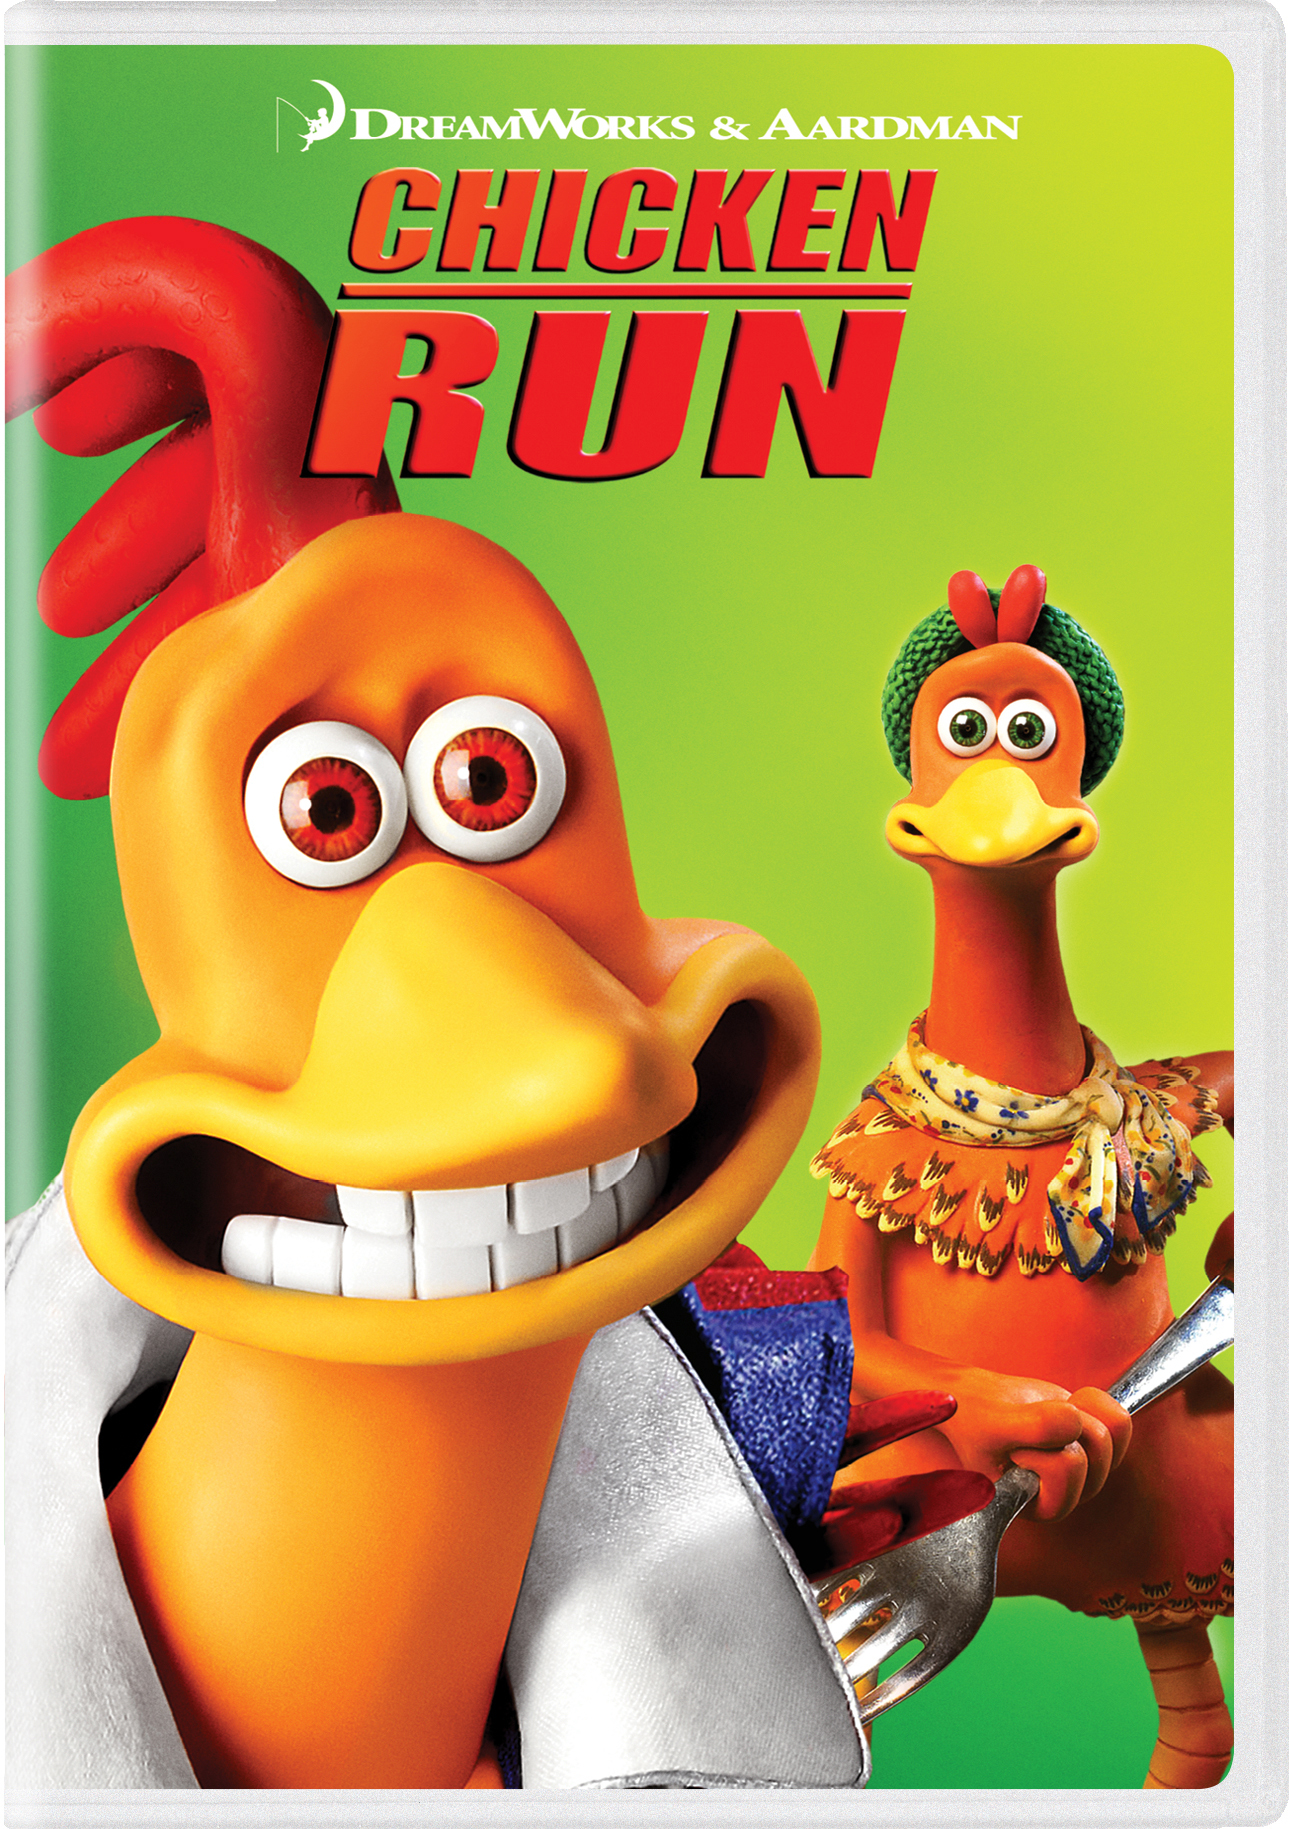 chicken little movie dvd